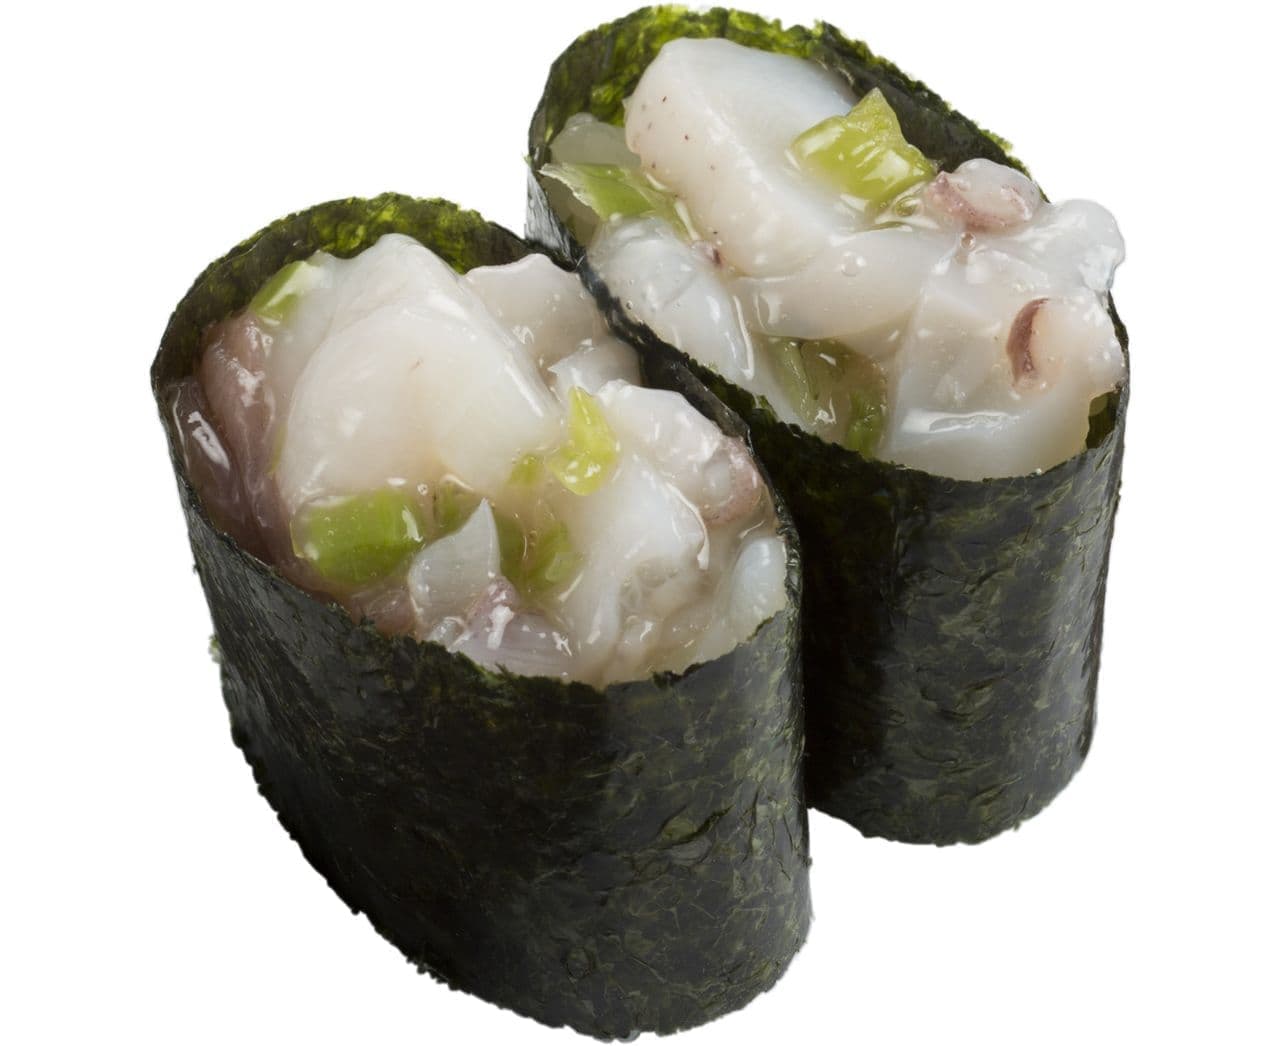 Sushiro "Tako Wasabi" (octopus and wasabi)